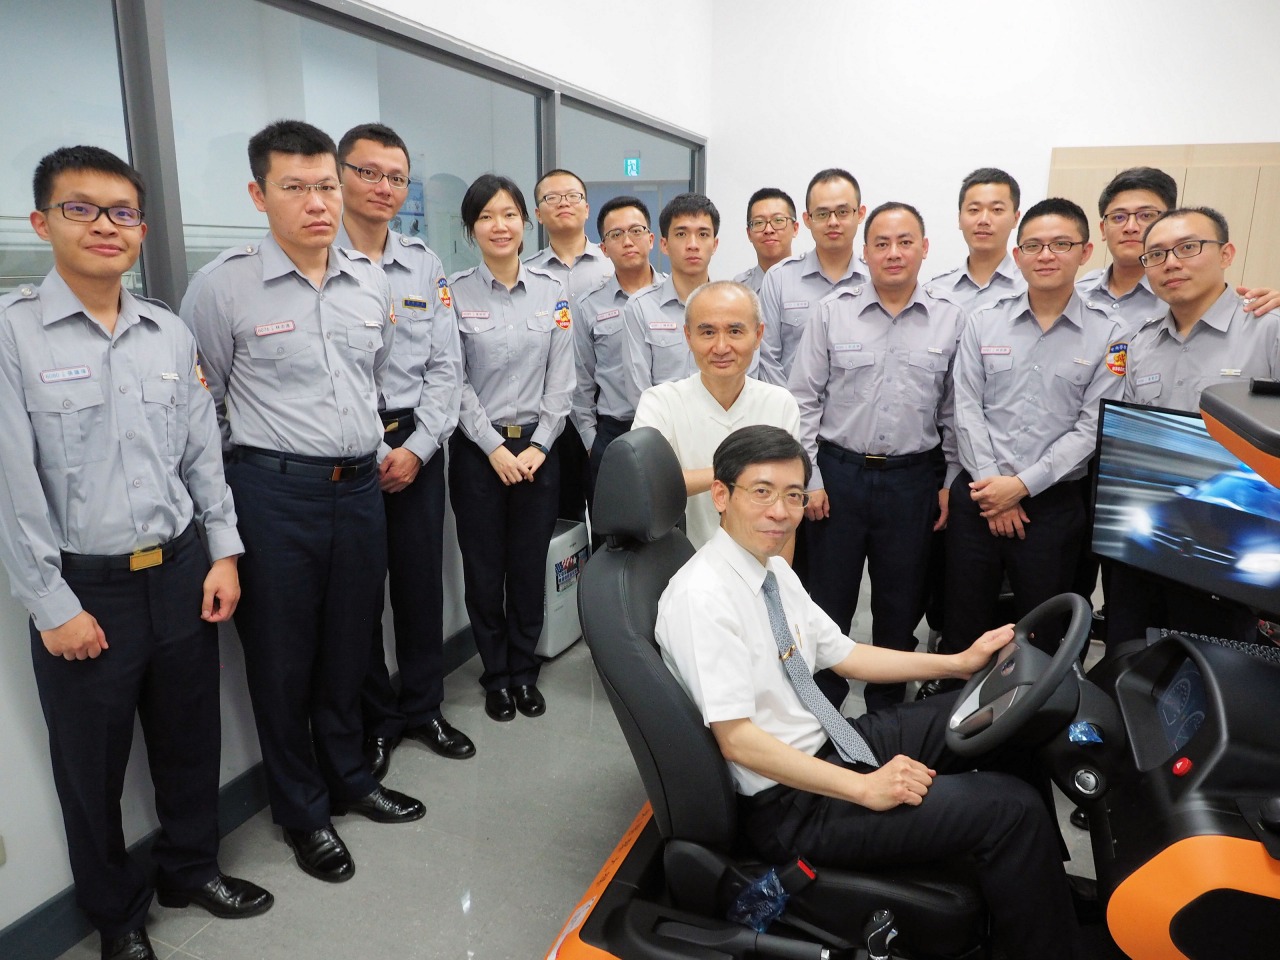 台湾警察のエリートと教官たち。ドライビングシミュレーターの運転席に座っている方が、交通学科長のピーチャン・チャンさん